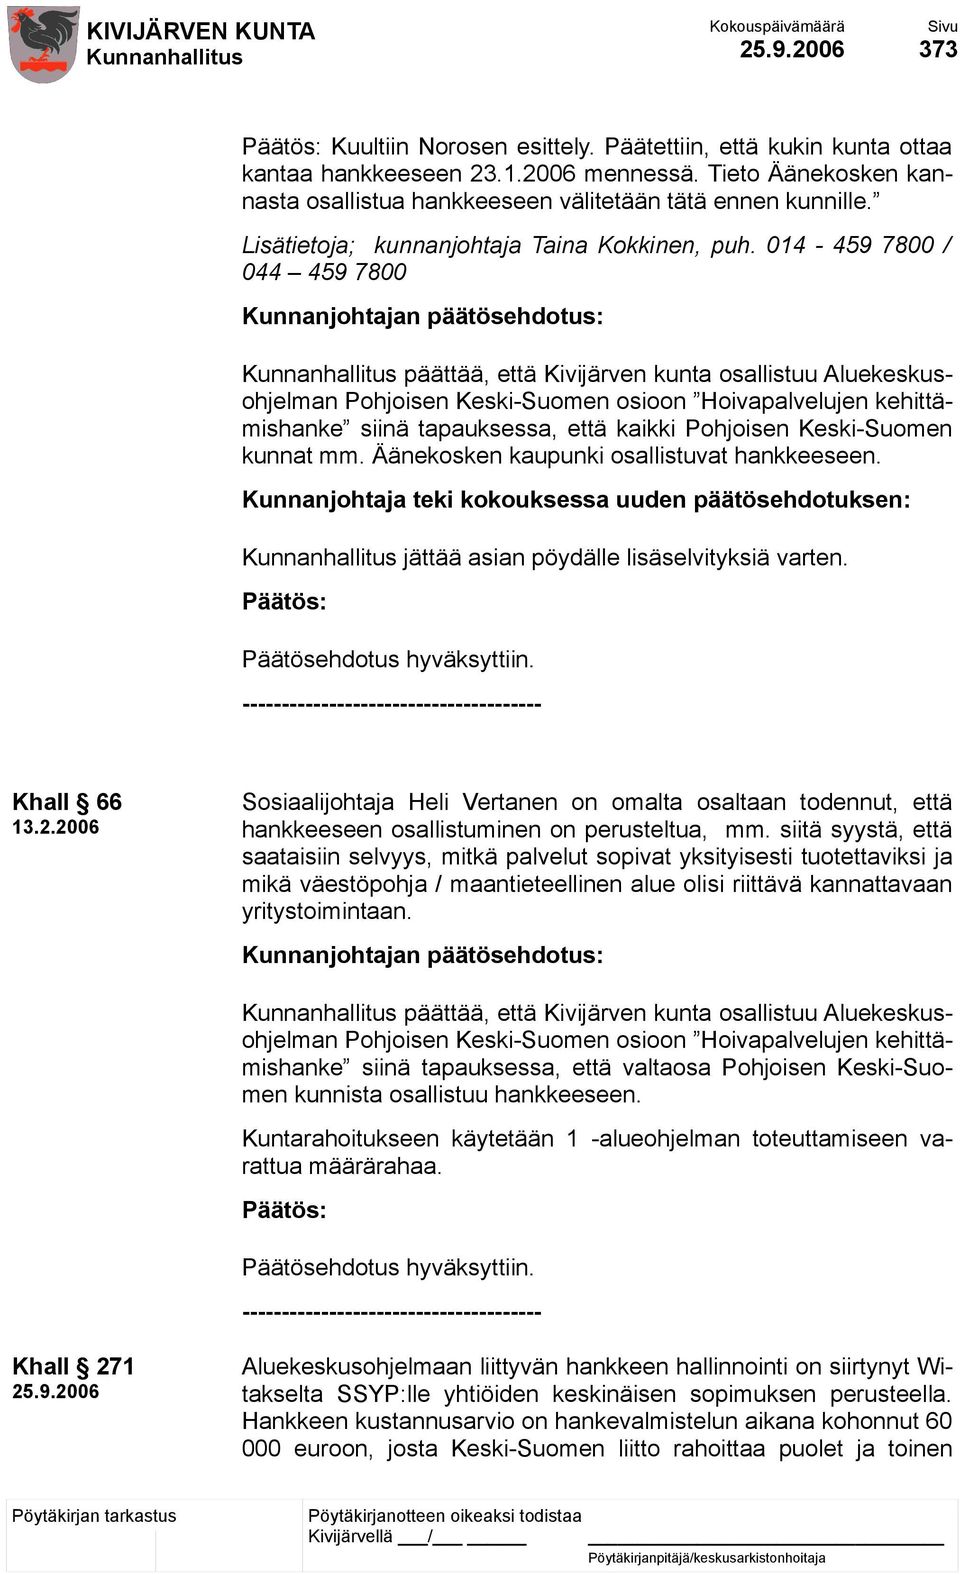 014-459 7800 / 044 459 7800 päättää, että Kivijärven kunta osallistuu Aluekeskusohjelman Pohjoisen Keski-Suomen osioon Hoivapalvelujen kehittämishanke siinä tapauksessa, että kaikki Pohjoisen